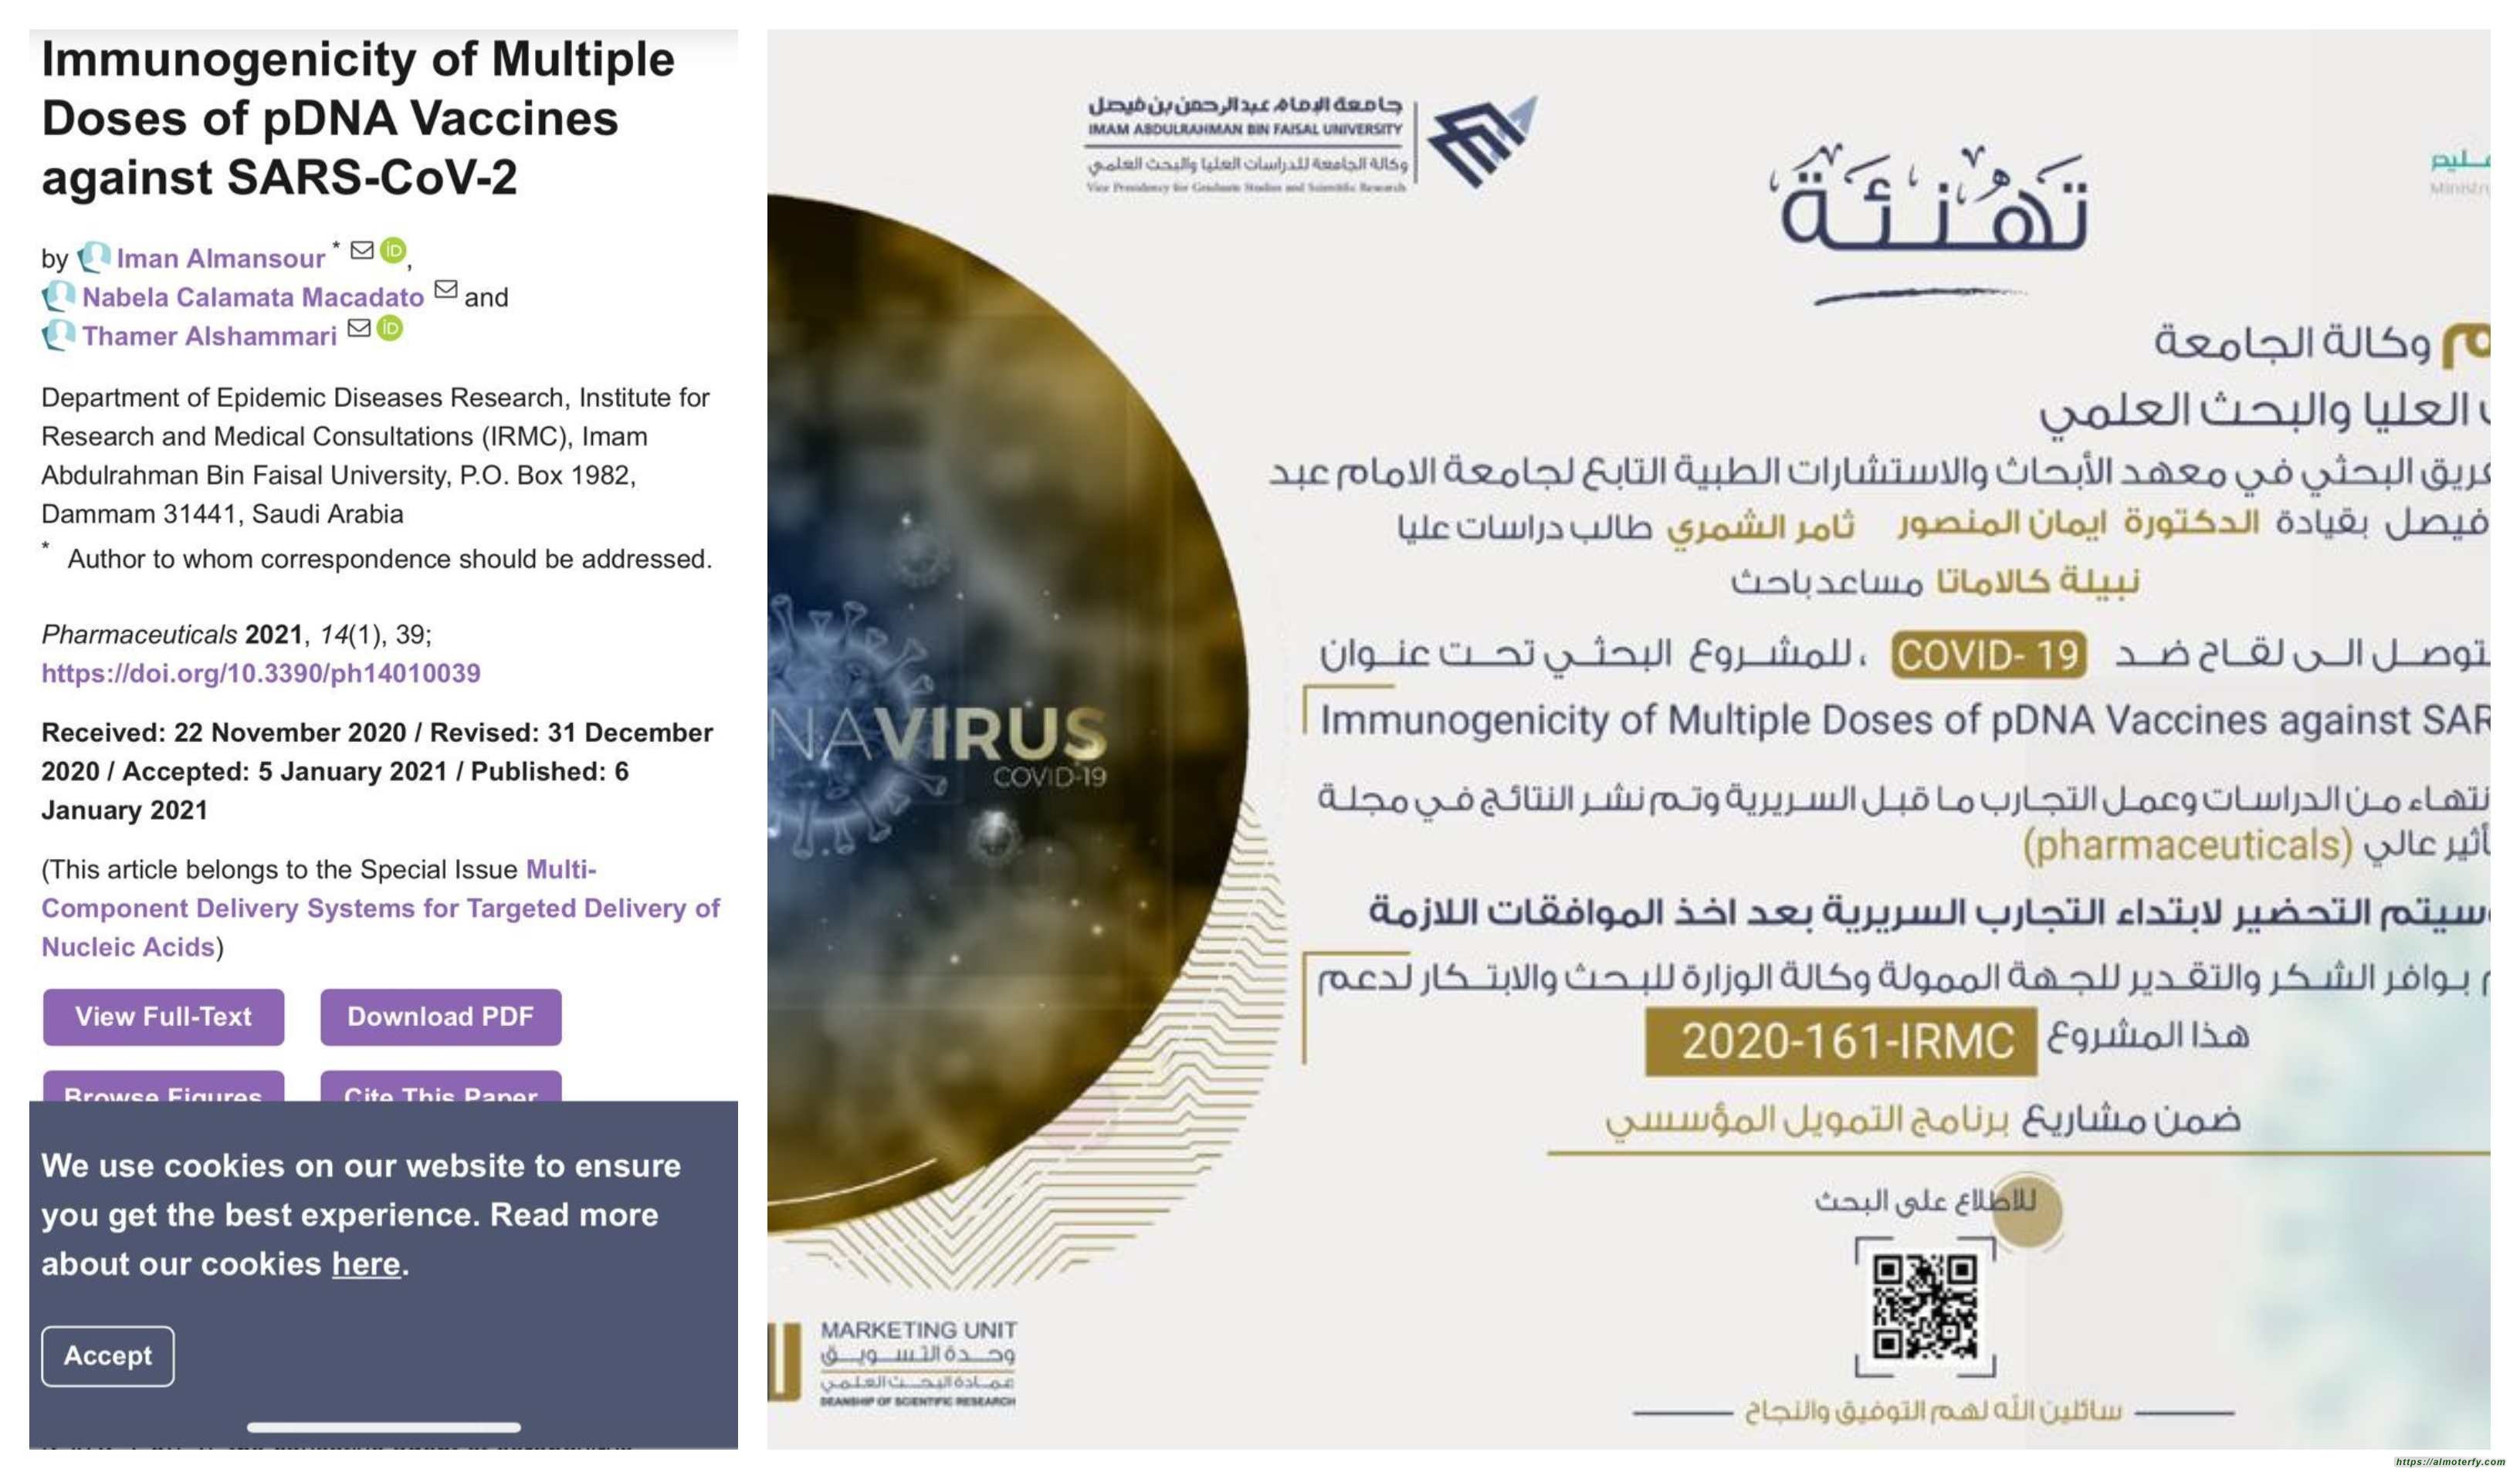 بدعم من وزارة التعليم.. أول لقاح سعودي ضد فيروس كورونا تتوصل له جامعة الإمام عبدالرحمن بن فيصل